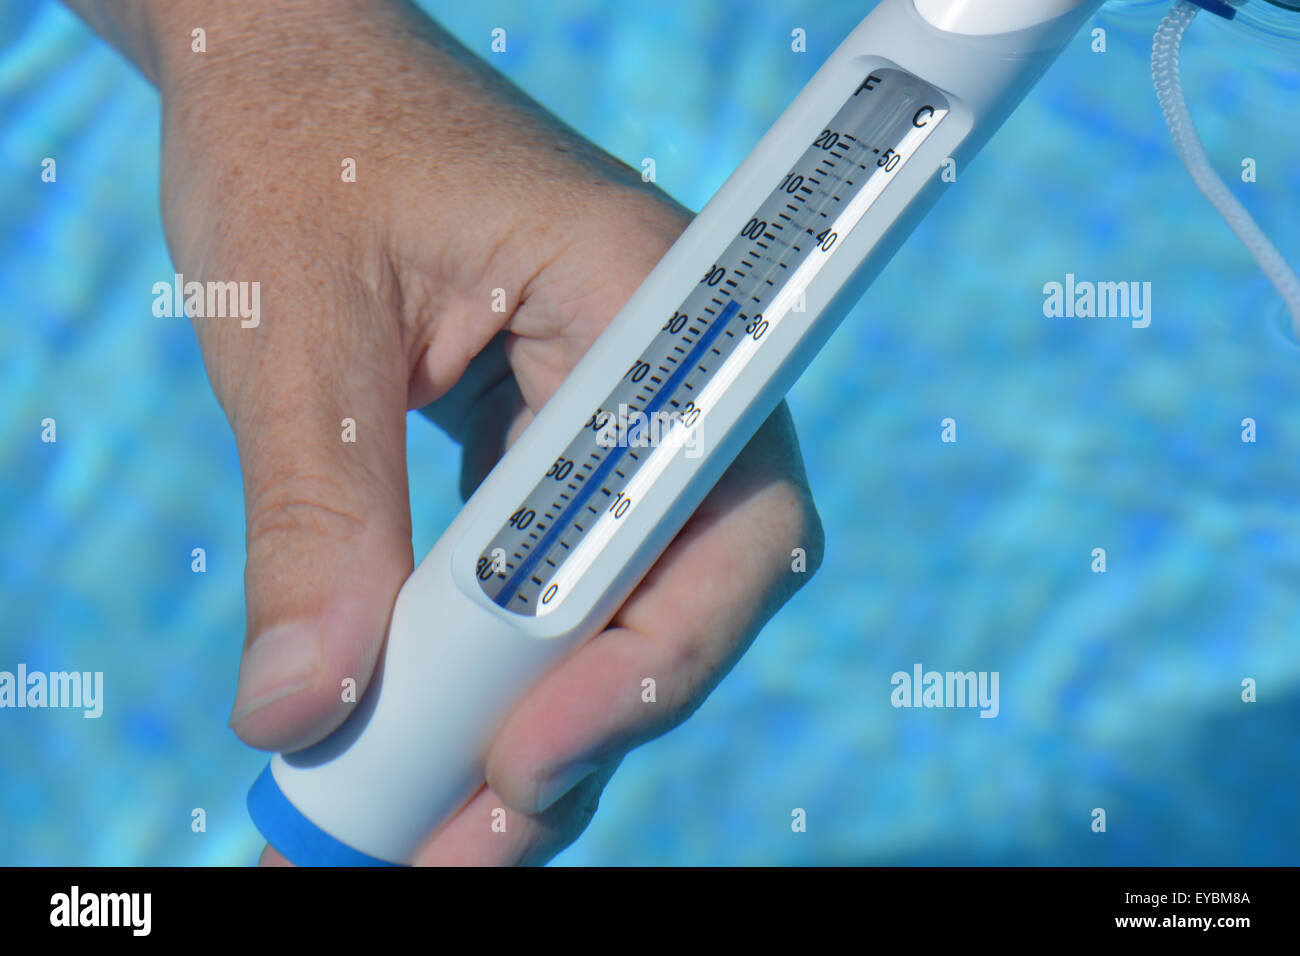 Termometro in piscina, misurazione 31C della temperatura dell'acqua in estate durante una ondata di caldo in Spagna. Foto Stock